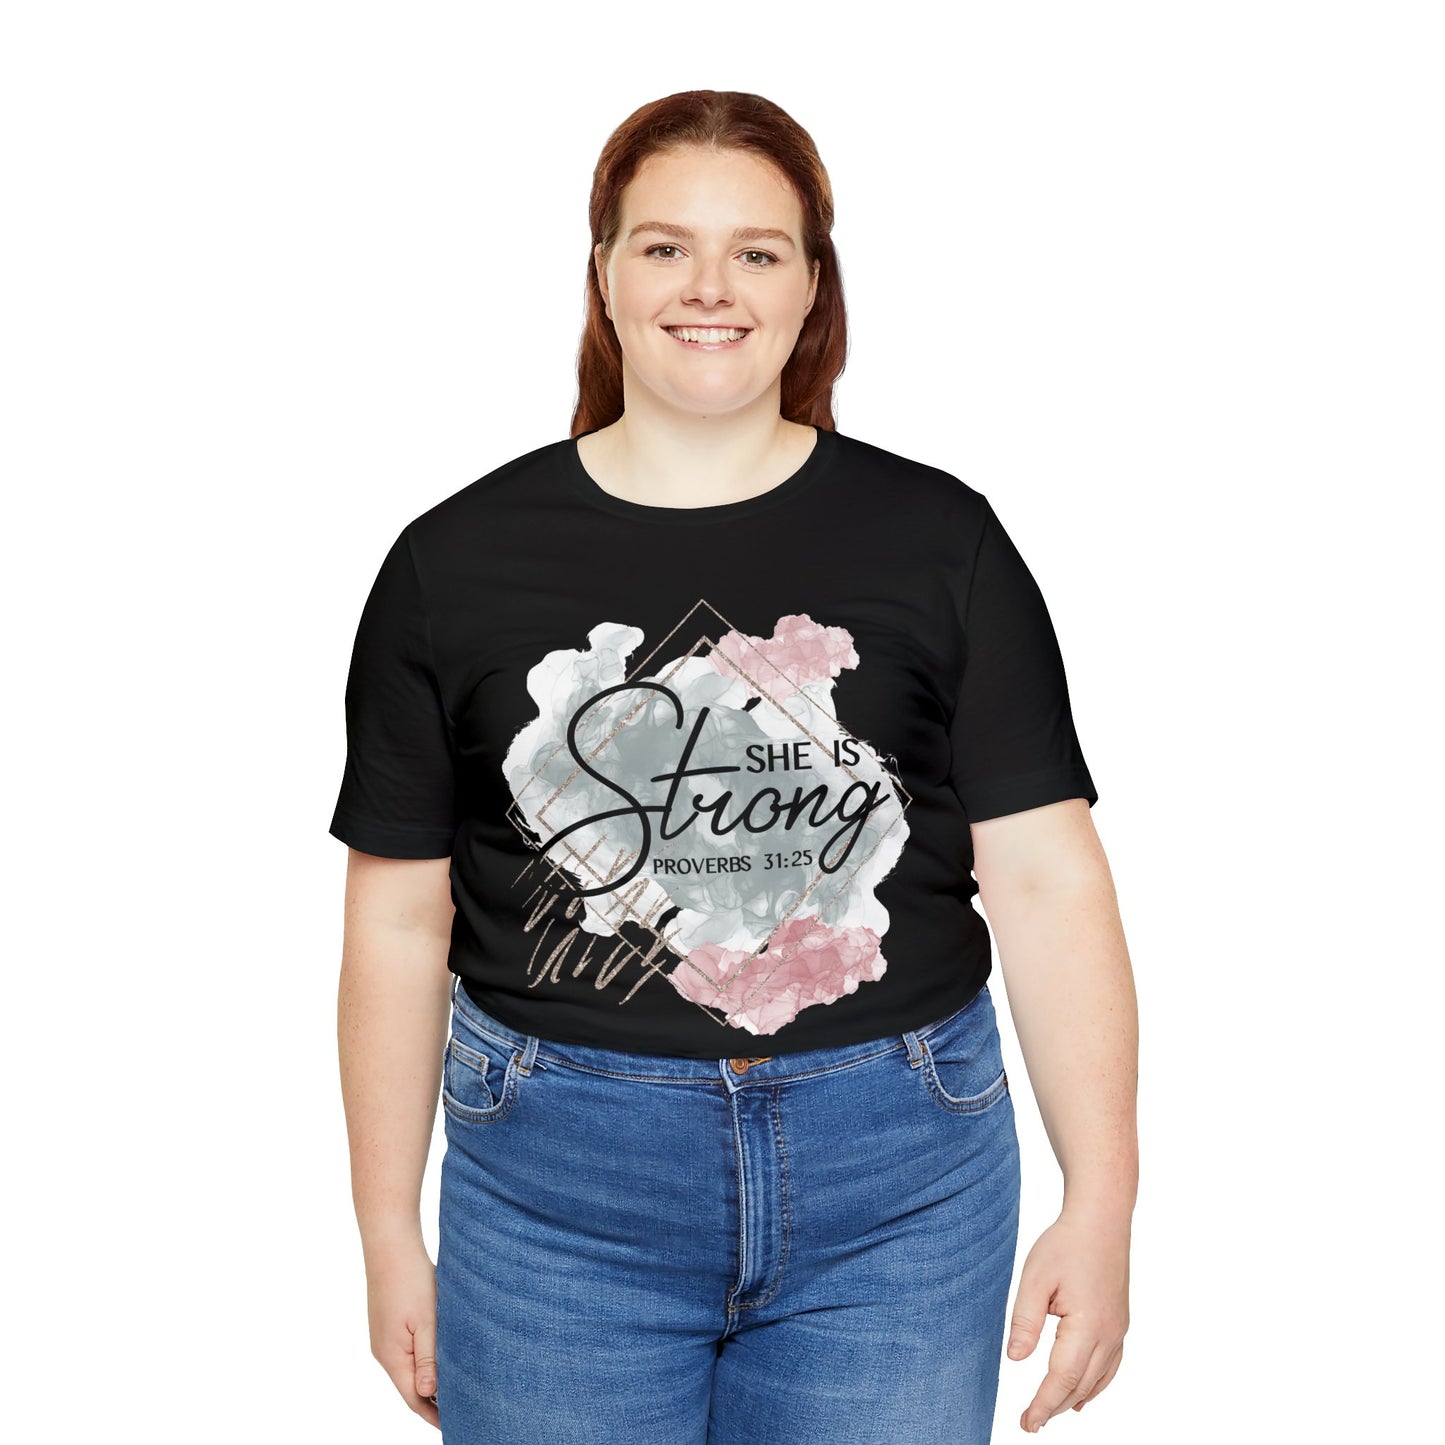 She Is Strong Shirt, Faith T-Shirt, Religious Tee, Gift for Christian Friend (Faith-57)